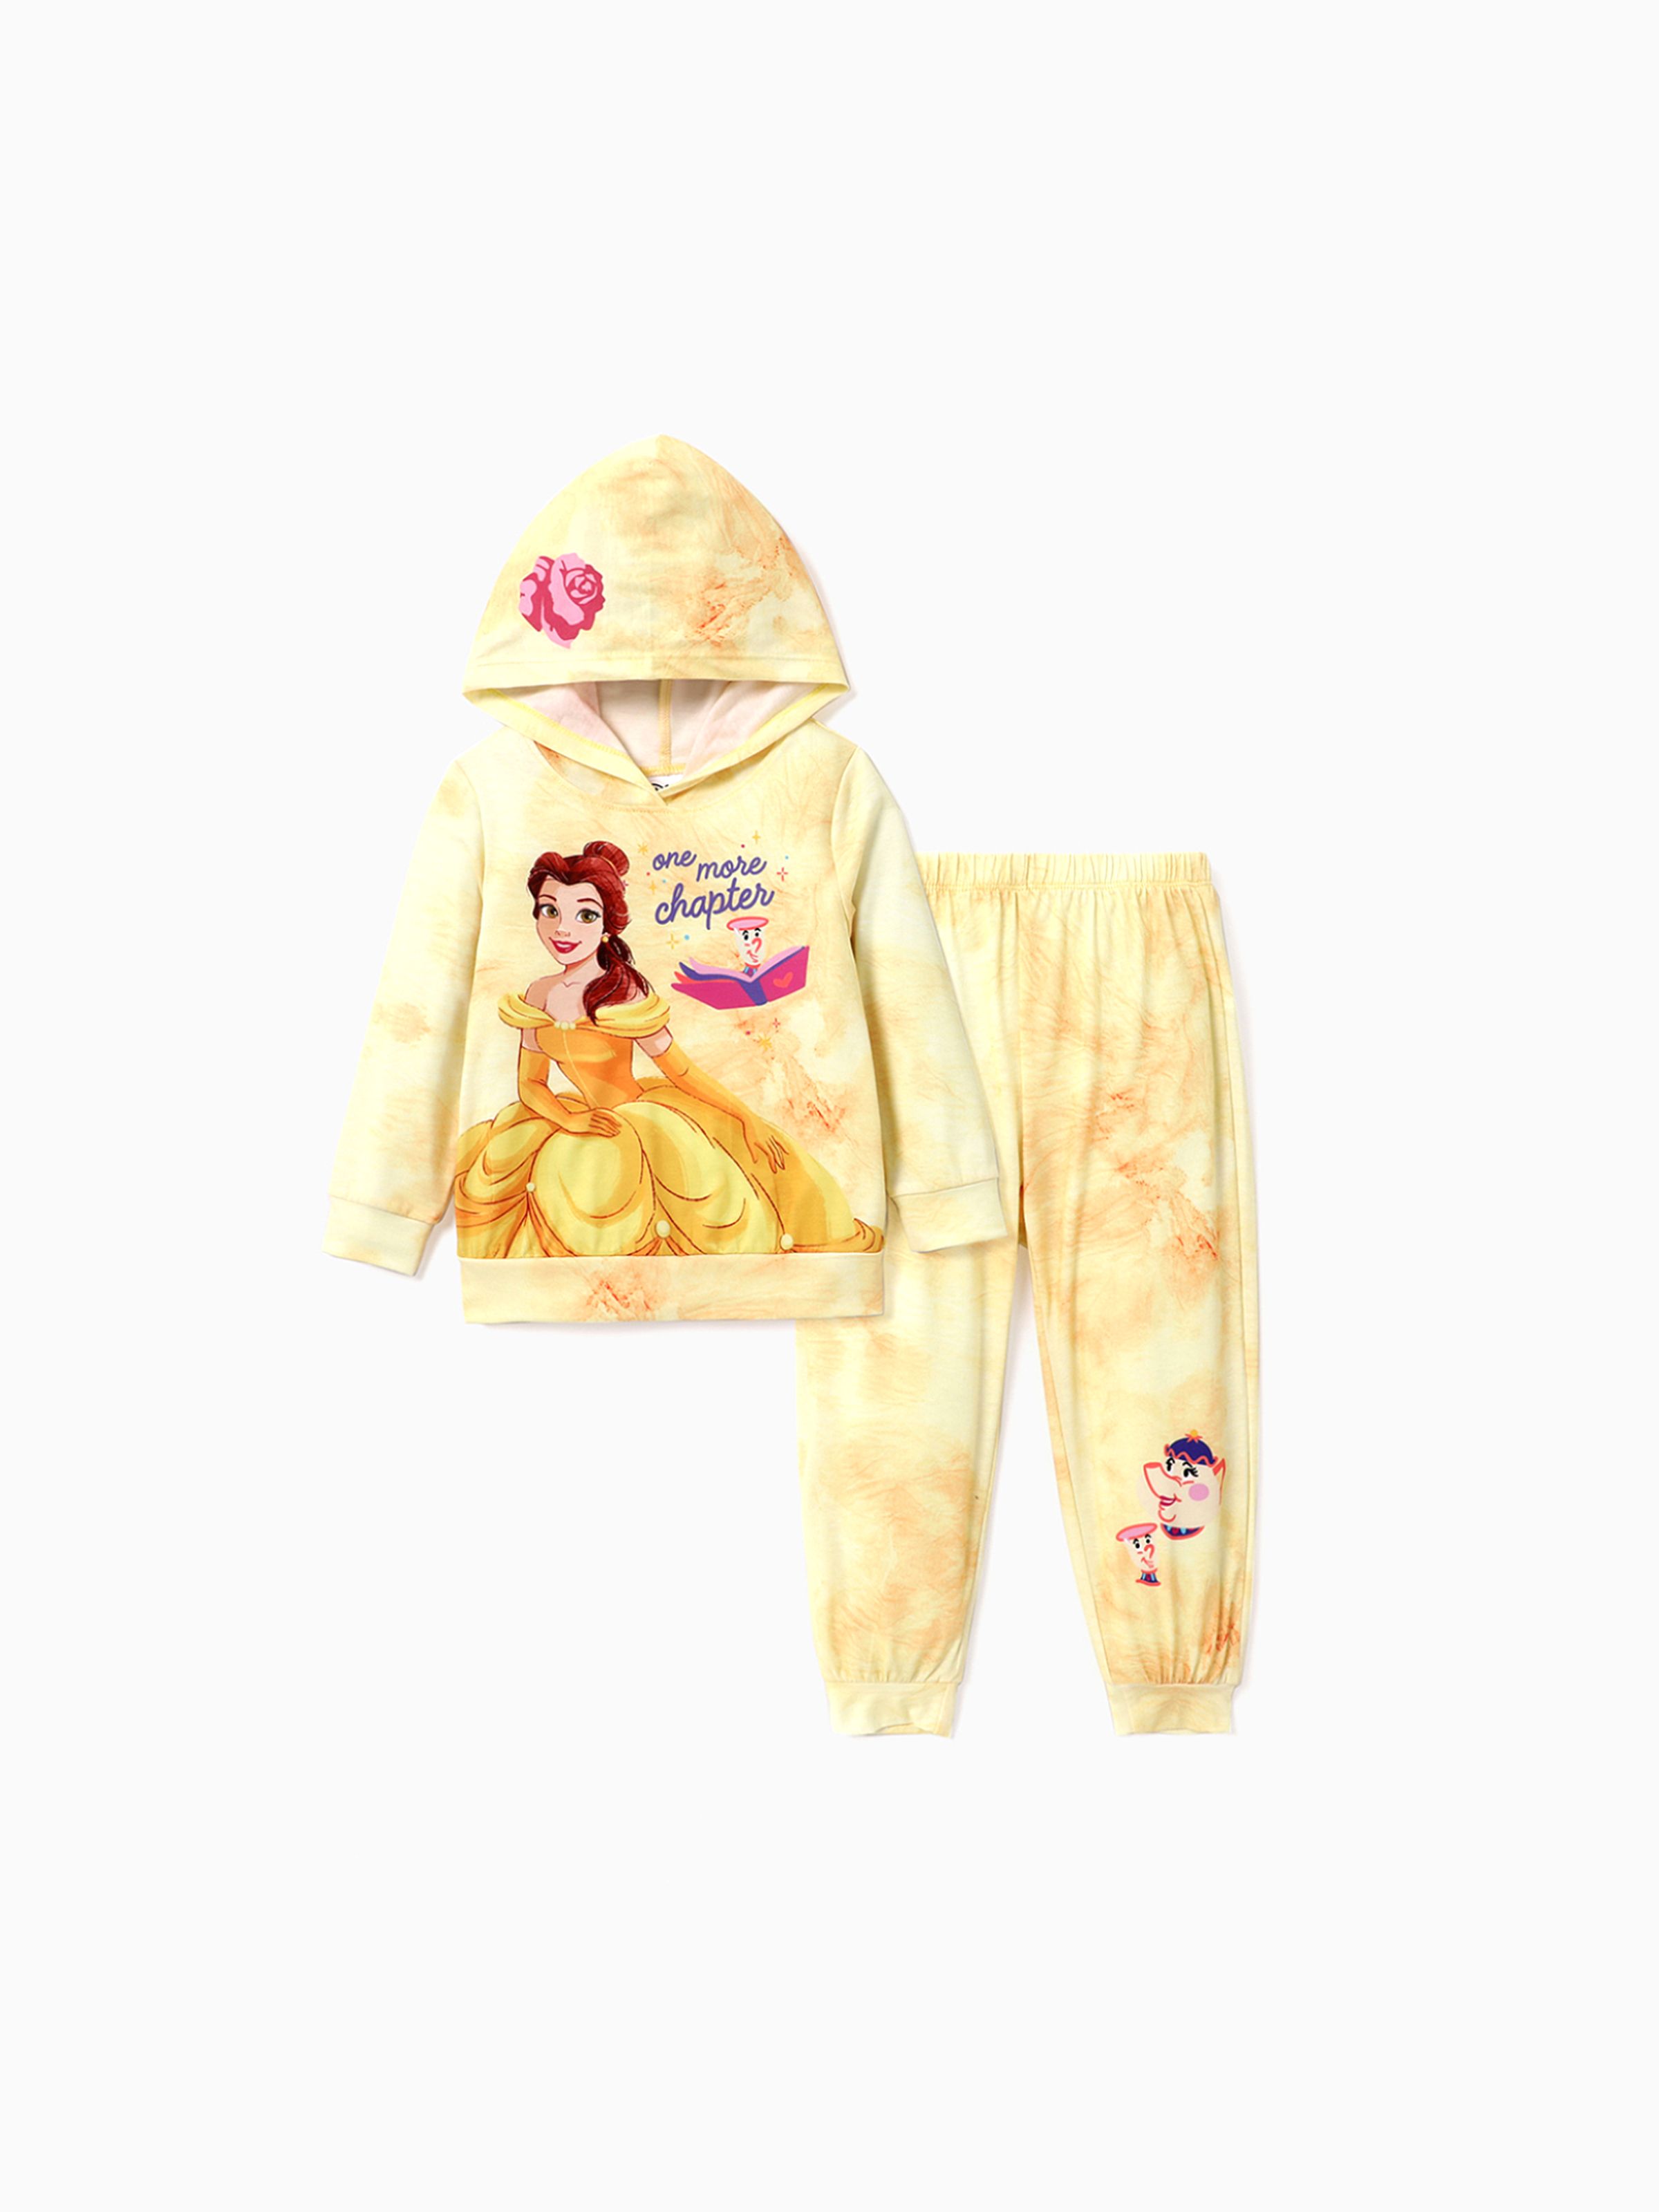 

Disney Princess Toddler/Kids Girl 2pcs Character Print Long-sleeve Top and Pants Set